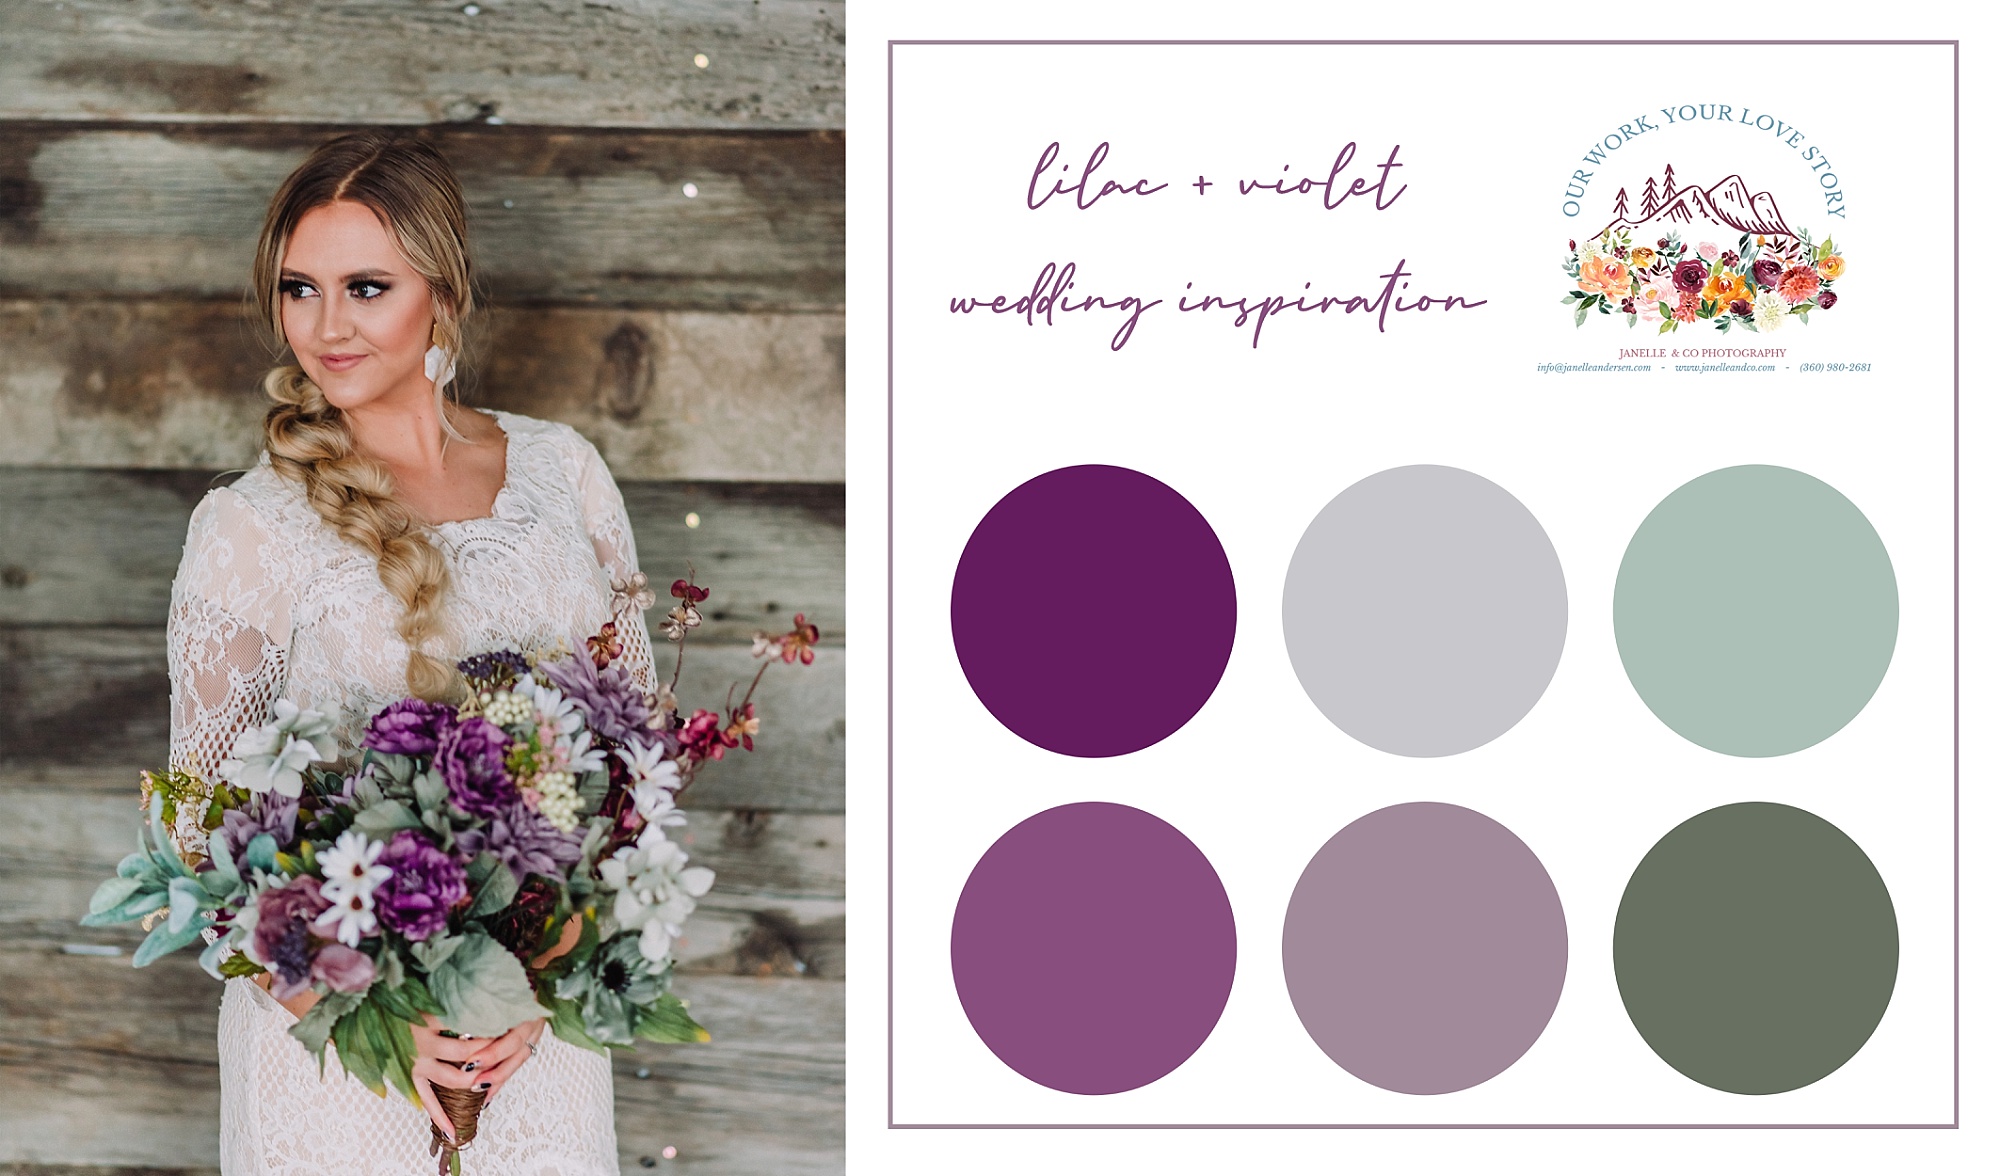 lilac-violet-sage-wedding-inspiration-color-board